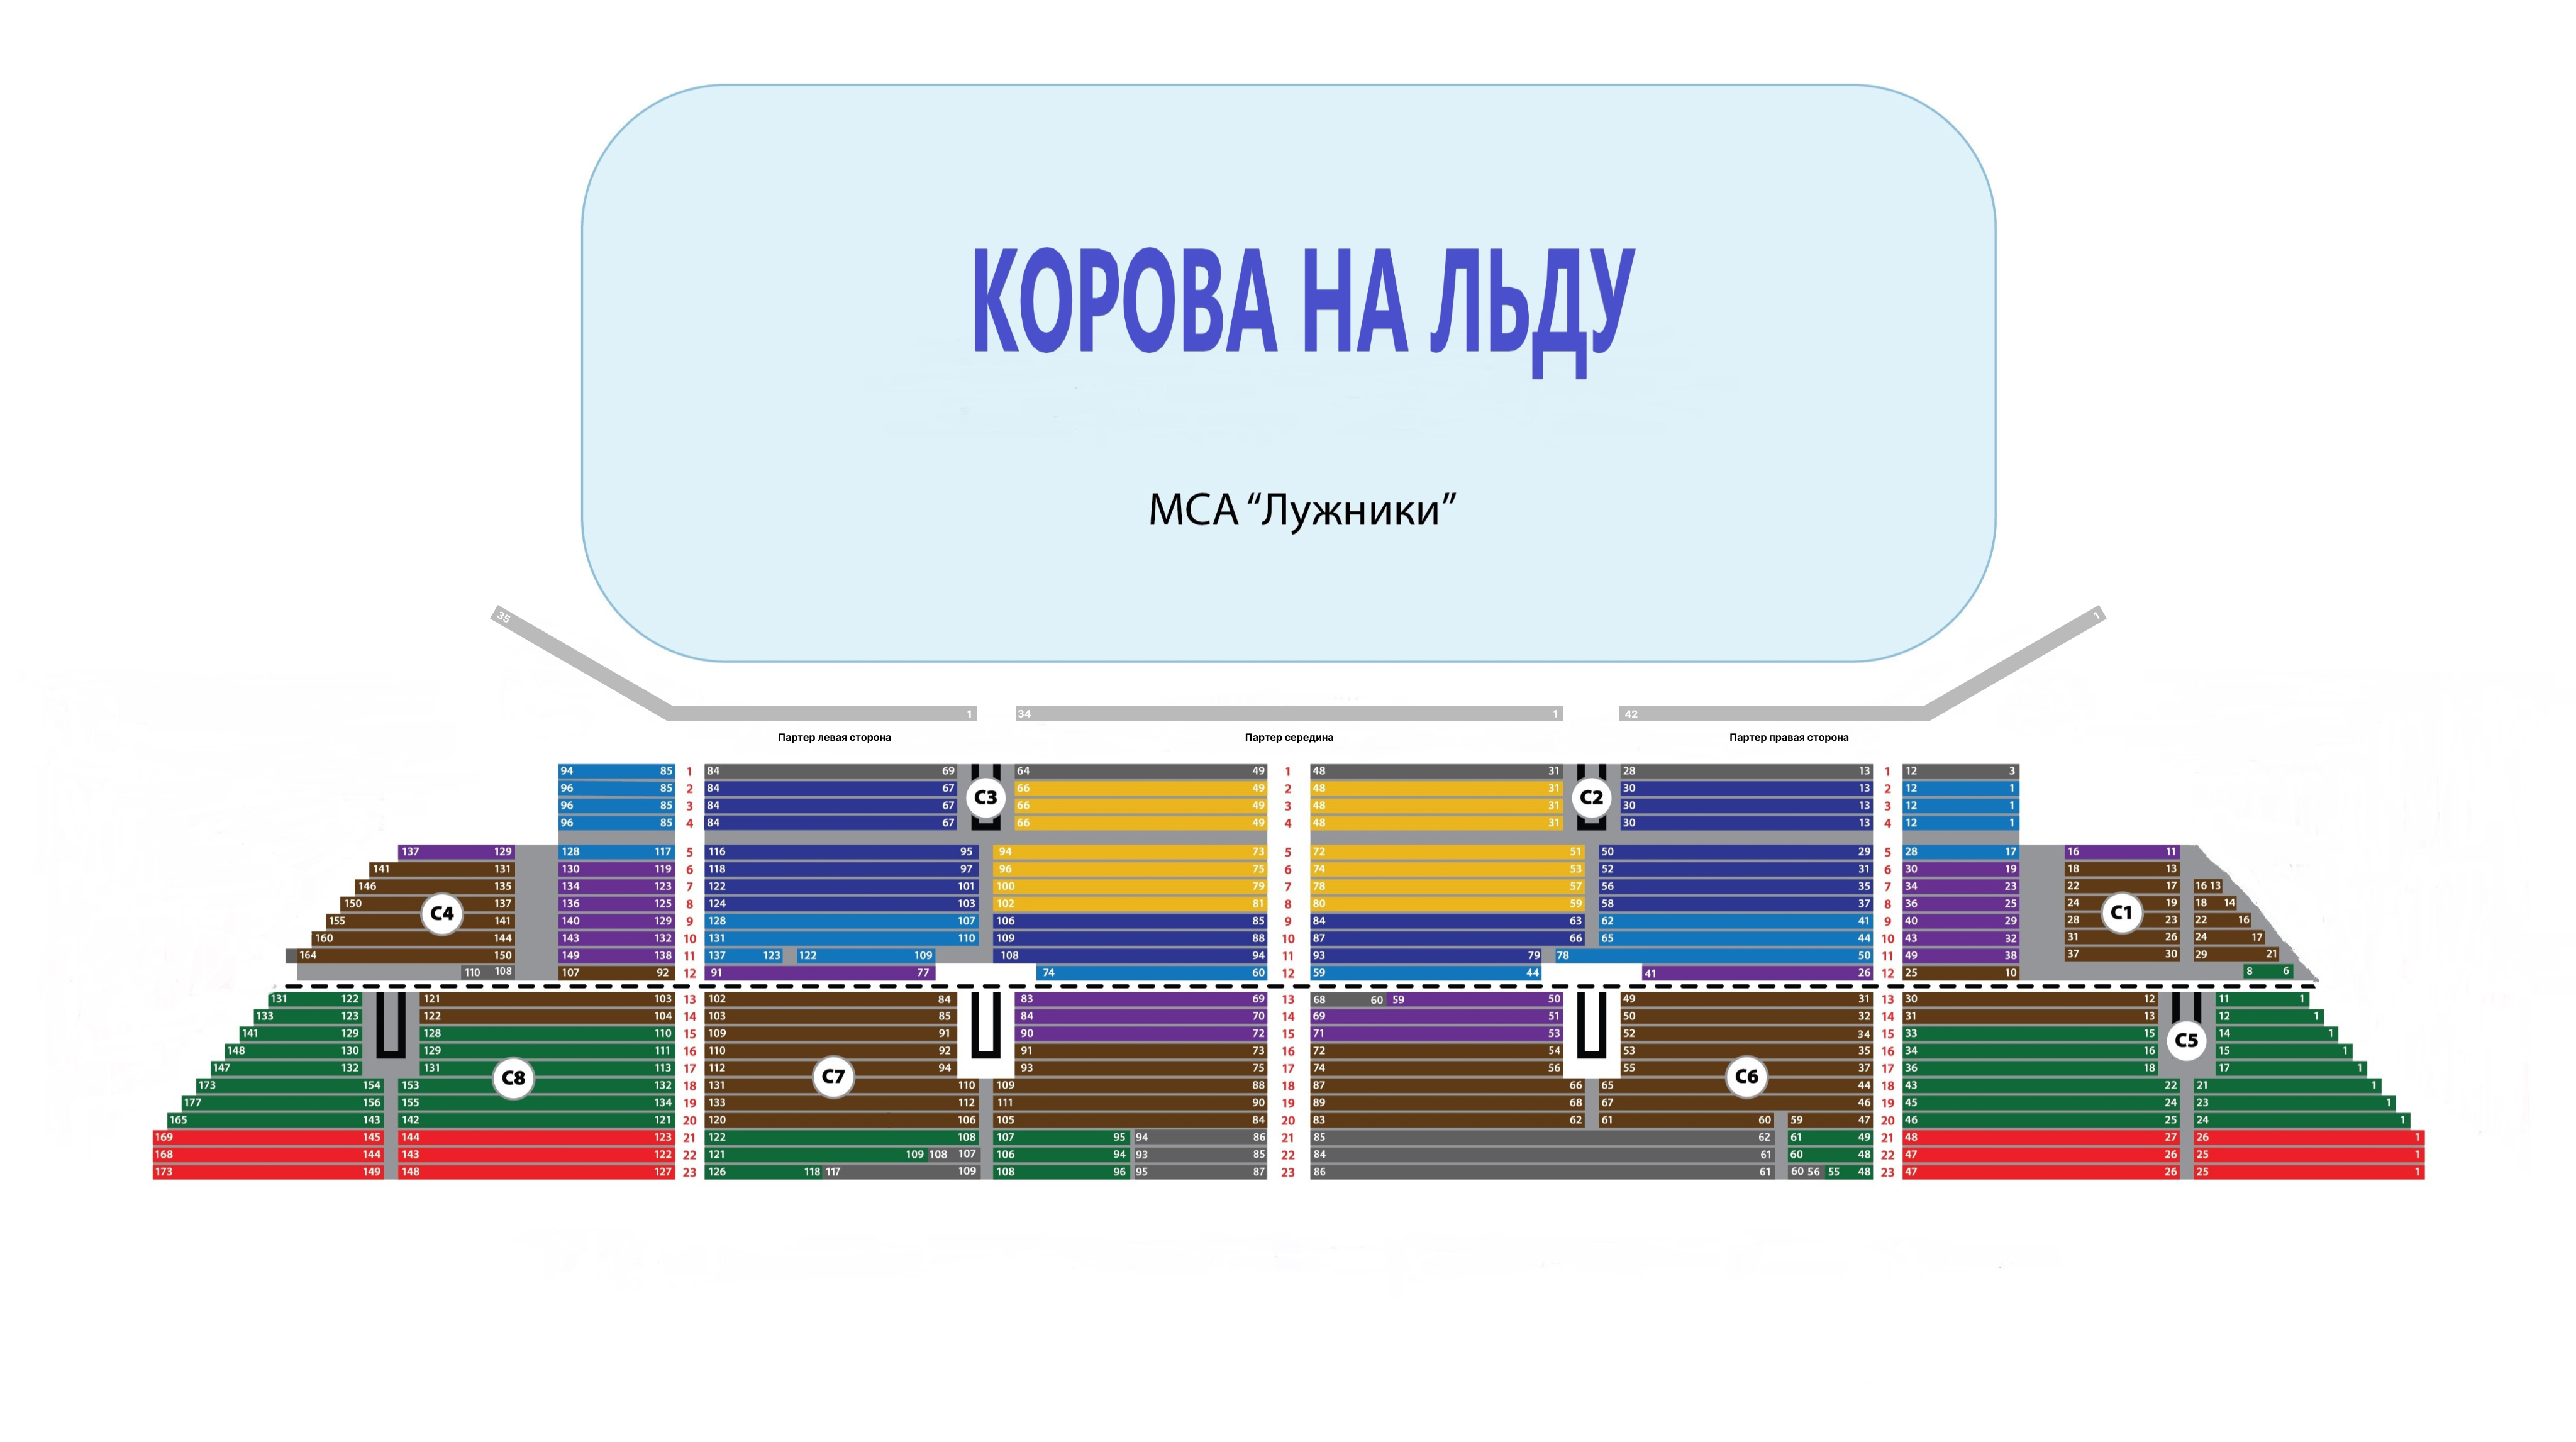 Ледовый дворец купить билеты на концерт